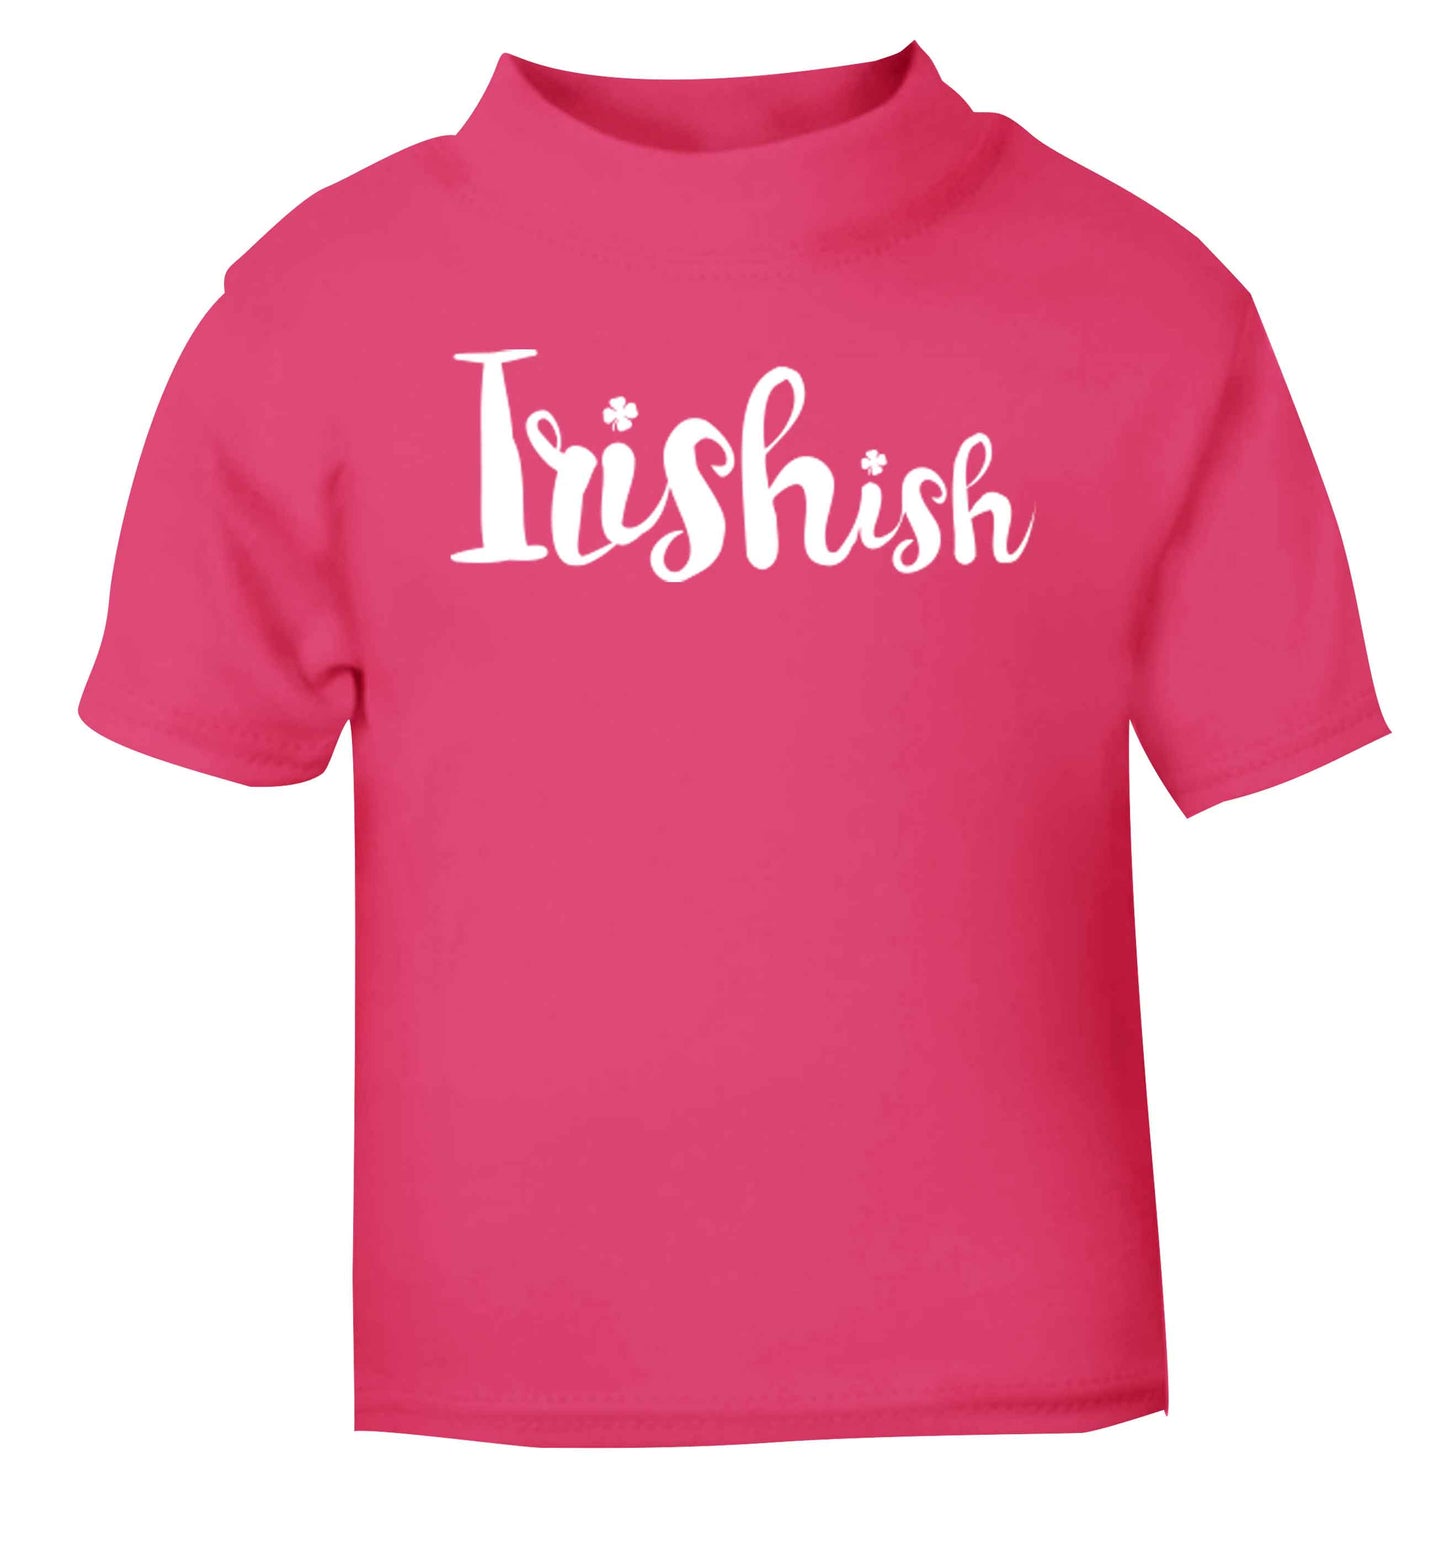 Irishish pink baby toddler Tshirt 2 Years